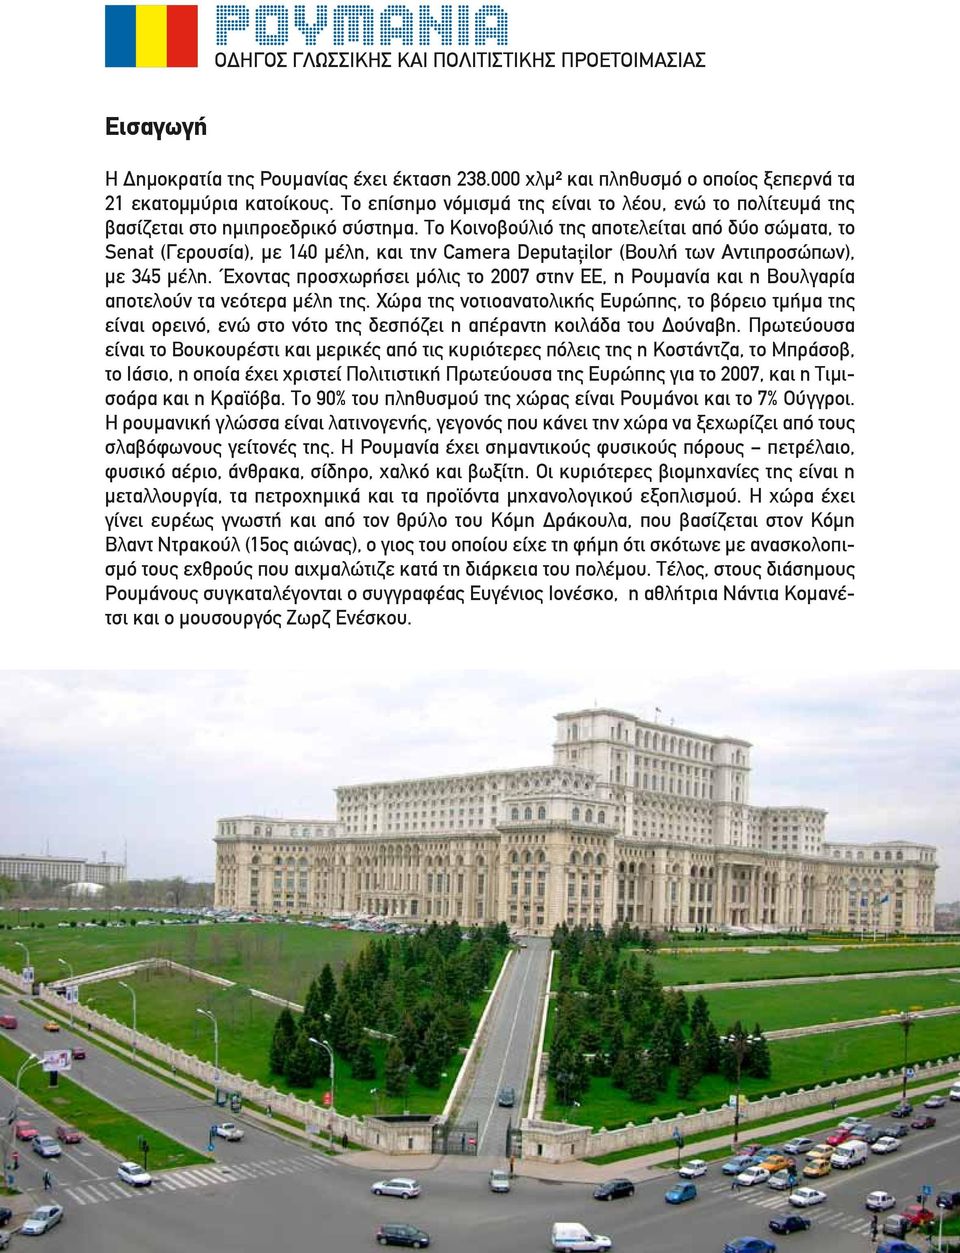 Το Κοινοβούλιό της αποτελείται από δύο σώματα, το Senat (Γερουσία), με 140 μέλη, και την Camera Deputaţilor (Βουλή των Αντιπροσώπων), με 345 μέλη.